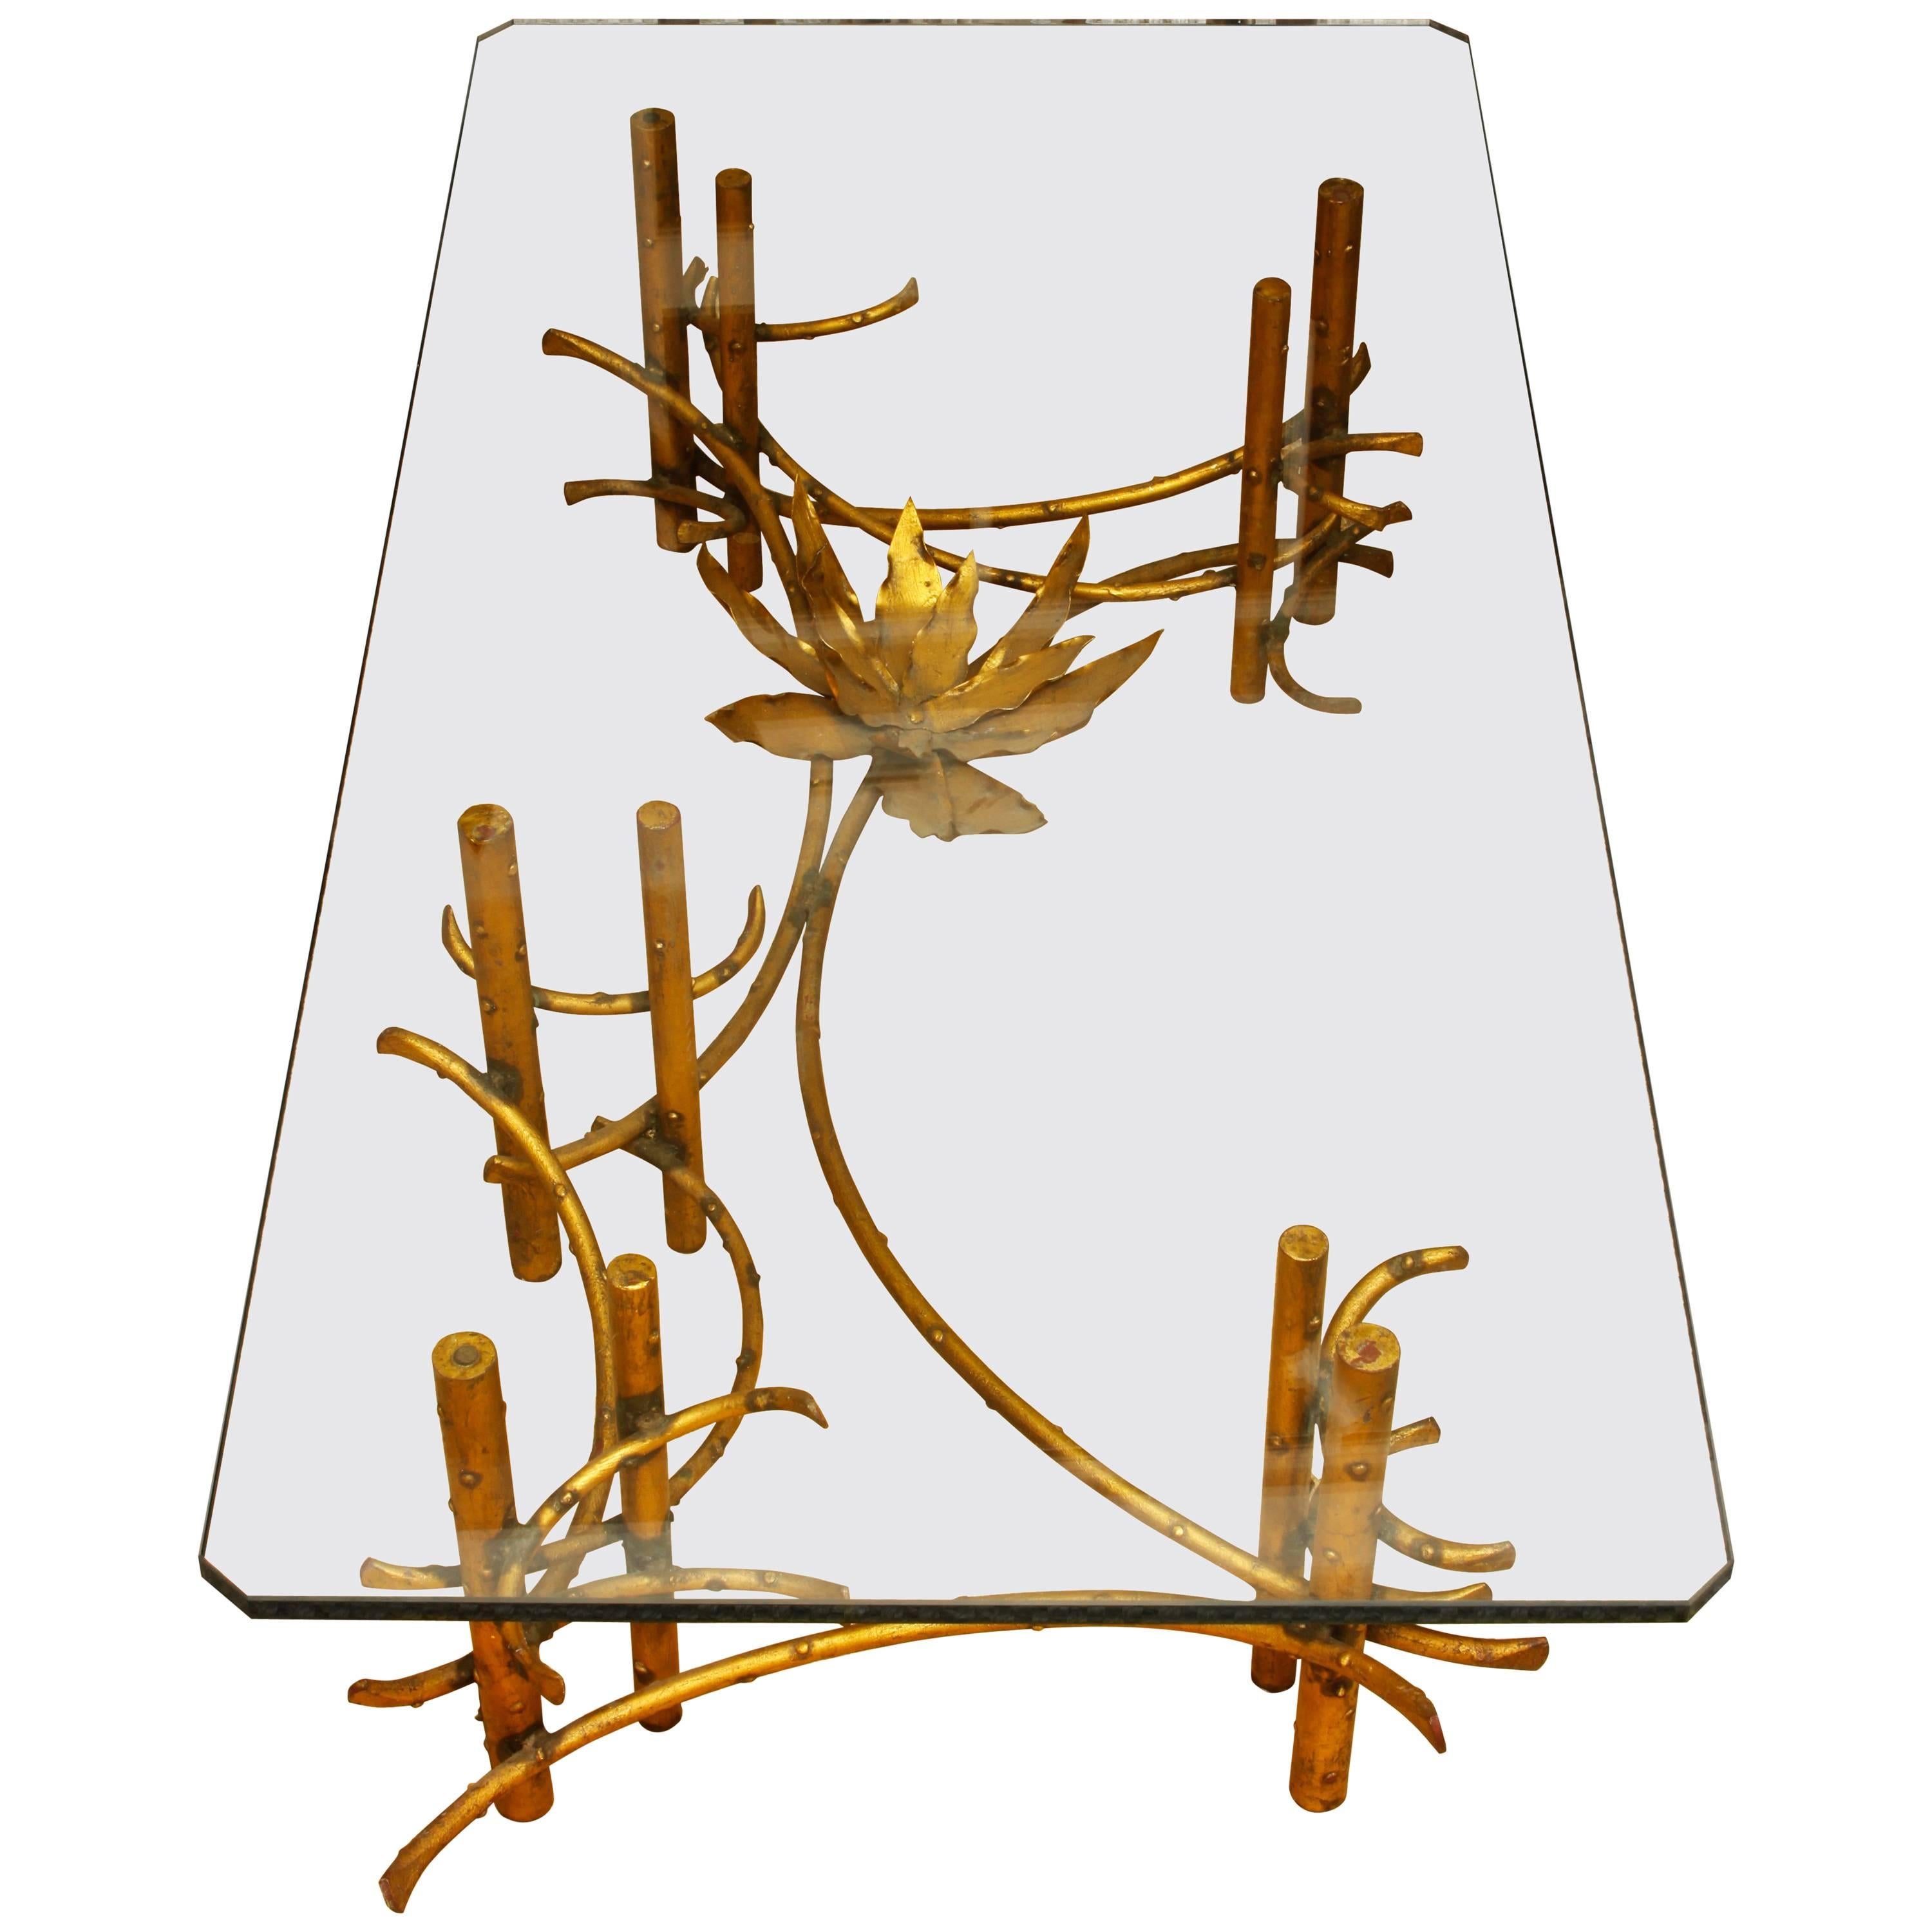 Ein fantastischer Tisch, der dem amerikanischen Bildhauer Silas Seandel zugeschrieben wird. Der Sockel hat ein wunderschönes asymmetrisches Design mit einer großen, blattartigen Blume an einem Ende, die eine dicke Glasplatte trägt. Der Tisch ist ein